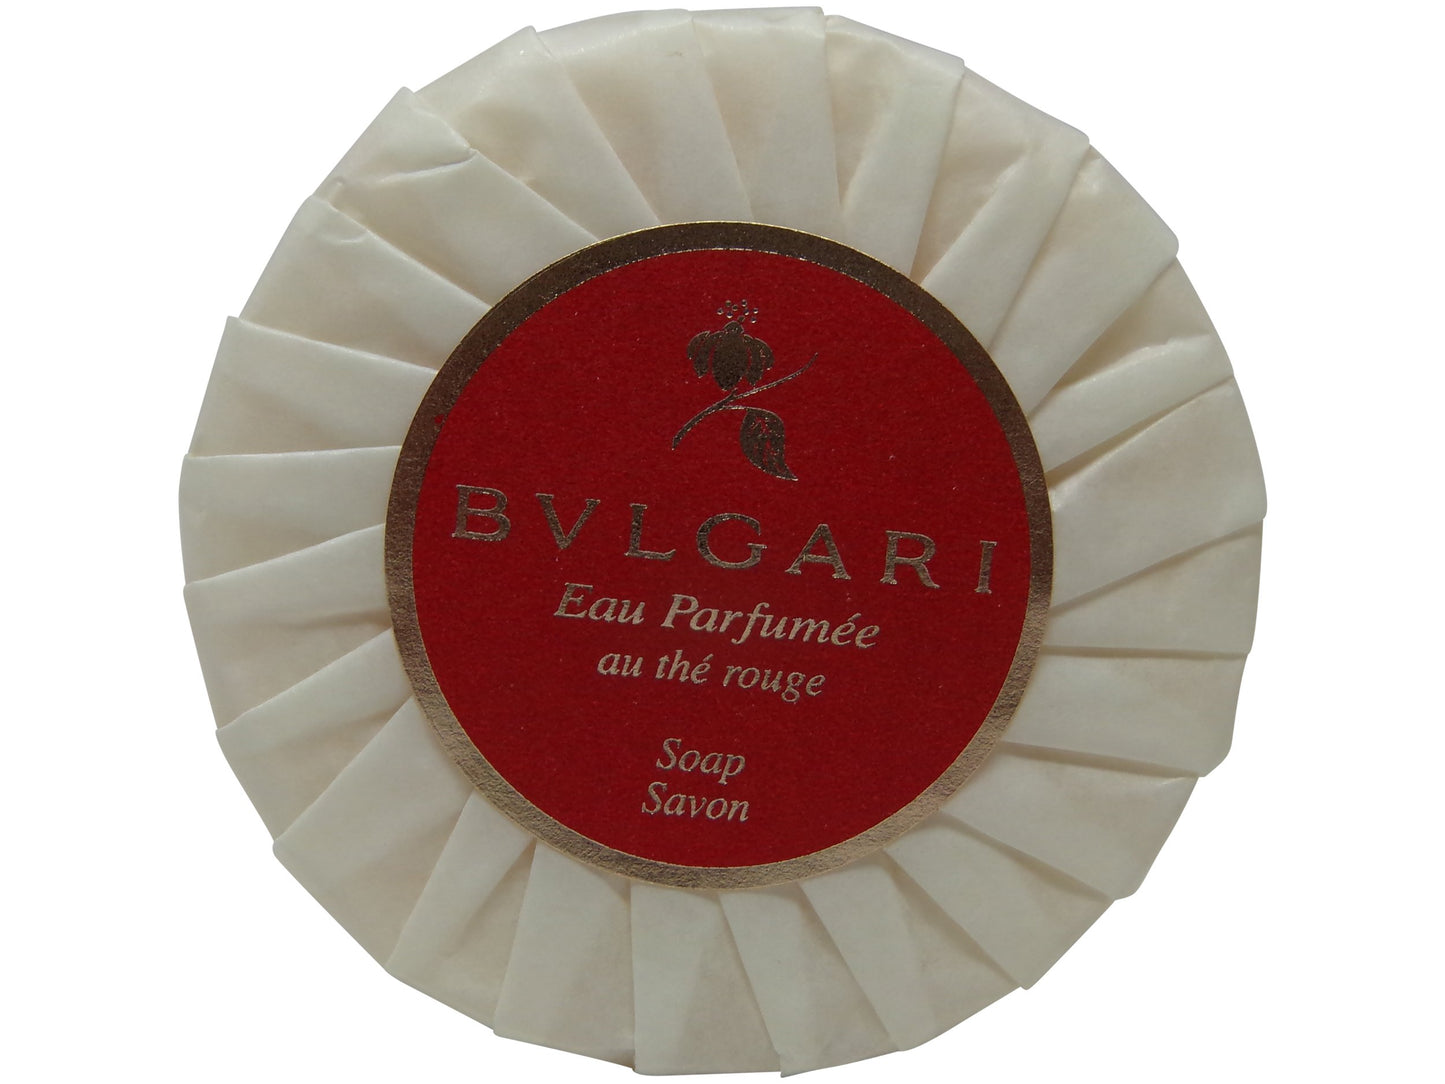 Bvlgari Eau Parfumee Au the Rouge Soap, 2.6 oz. Set of 3